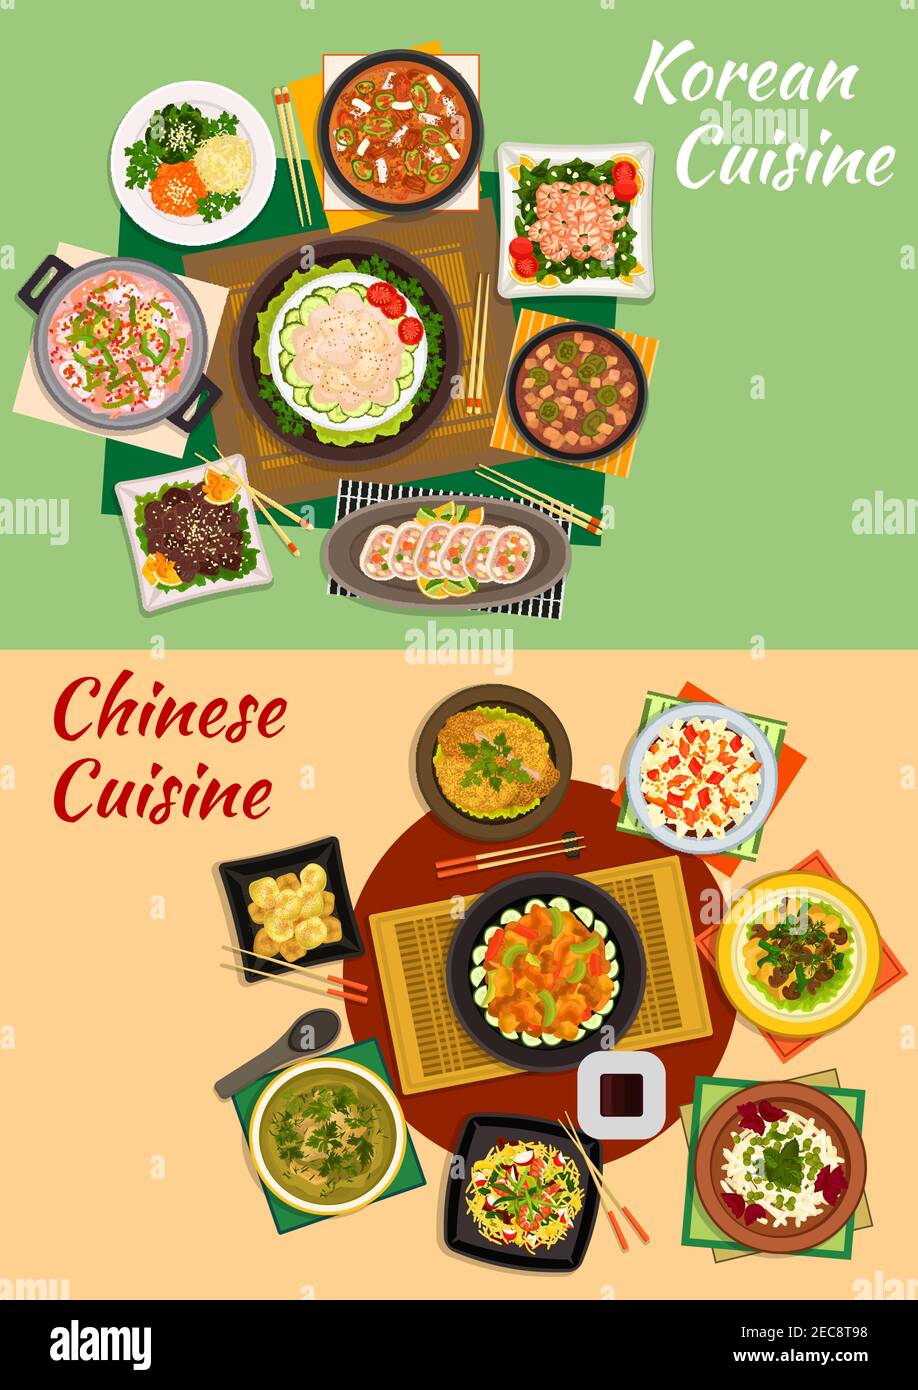 Cuisine chinoise et coréenne avec fruits de mer et salades de légumes épicés, bœuf grillé, nouilles aux crevettes, soupes de légumes, fruits de mer et tofu, porc frit Illustration de Vecteur